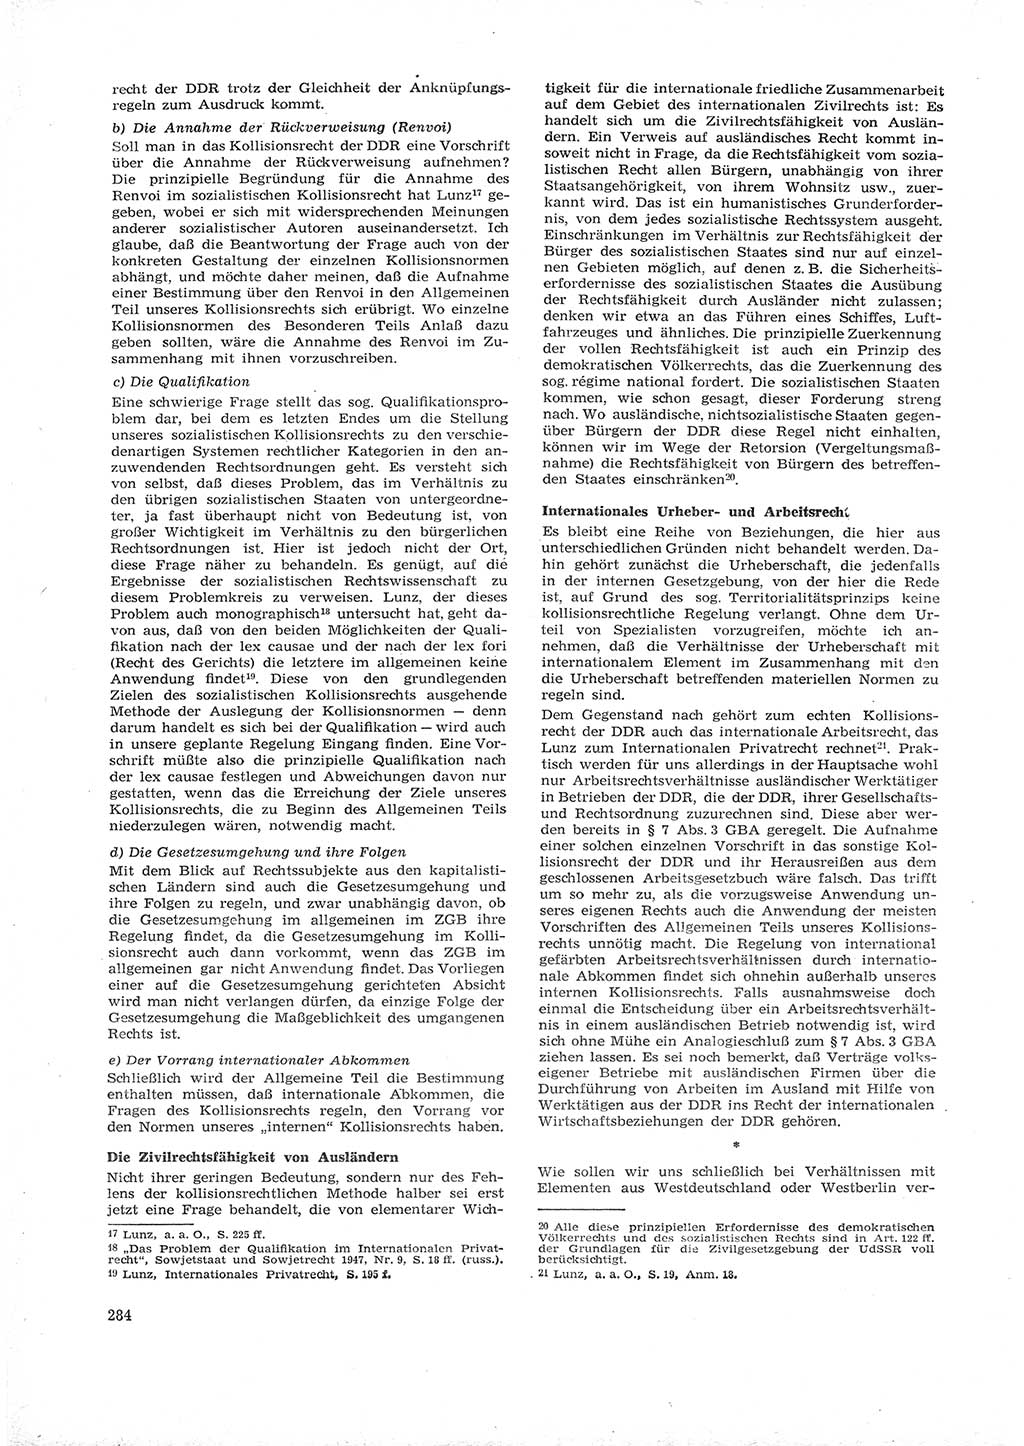 Neue Justiz (NJ), Zeitschrift für Recht und Rechtswissenschaft [Deutsche Demokratische Republik (DDR)], 16. Jahrgang 1962, Seite 284 (NJ DDR 1962, S. 284)